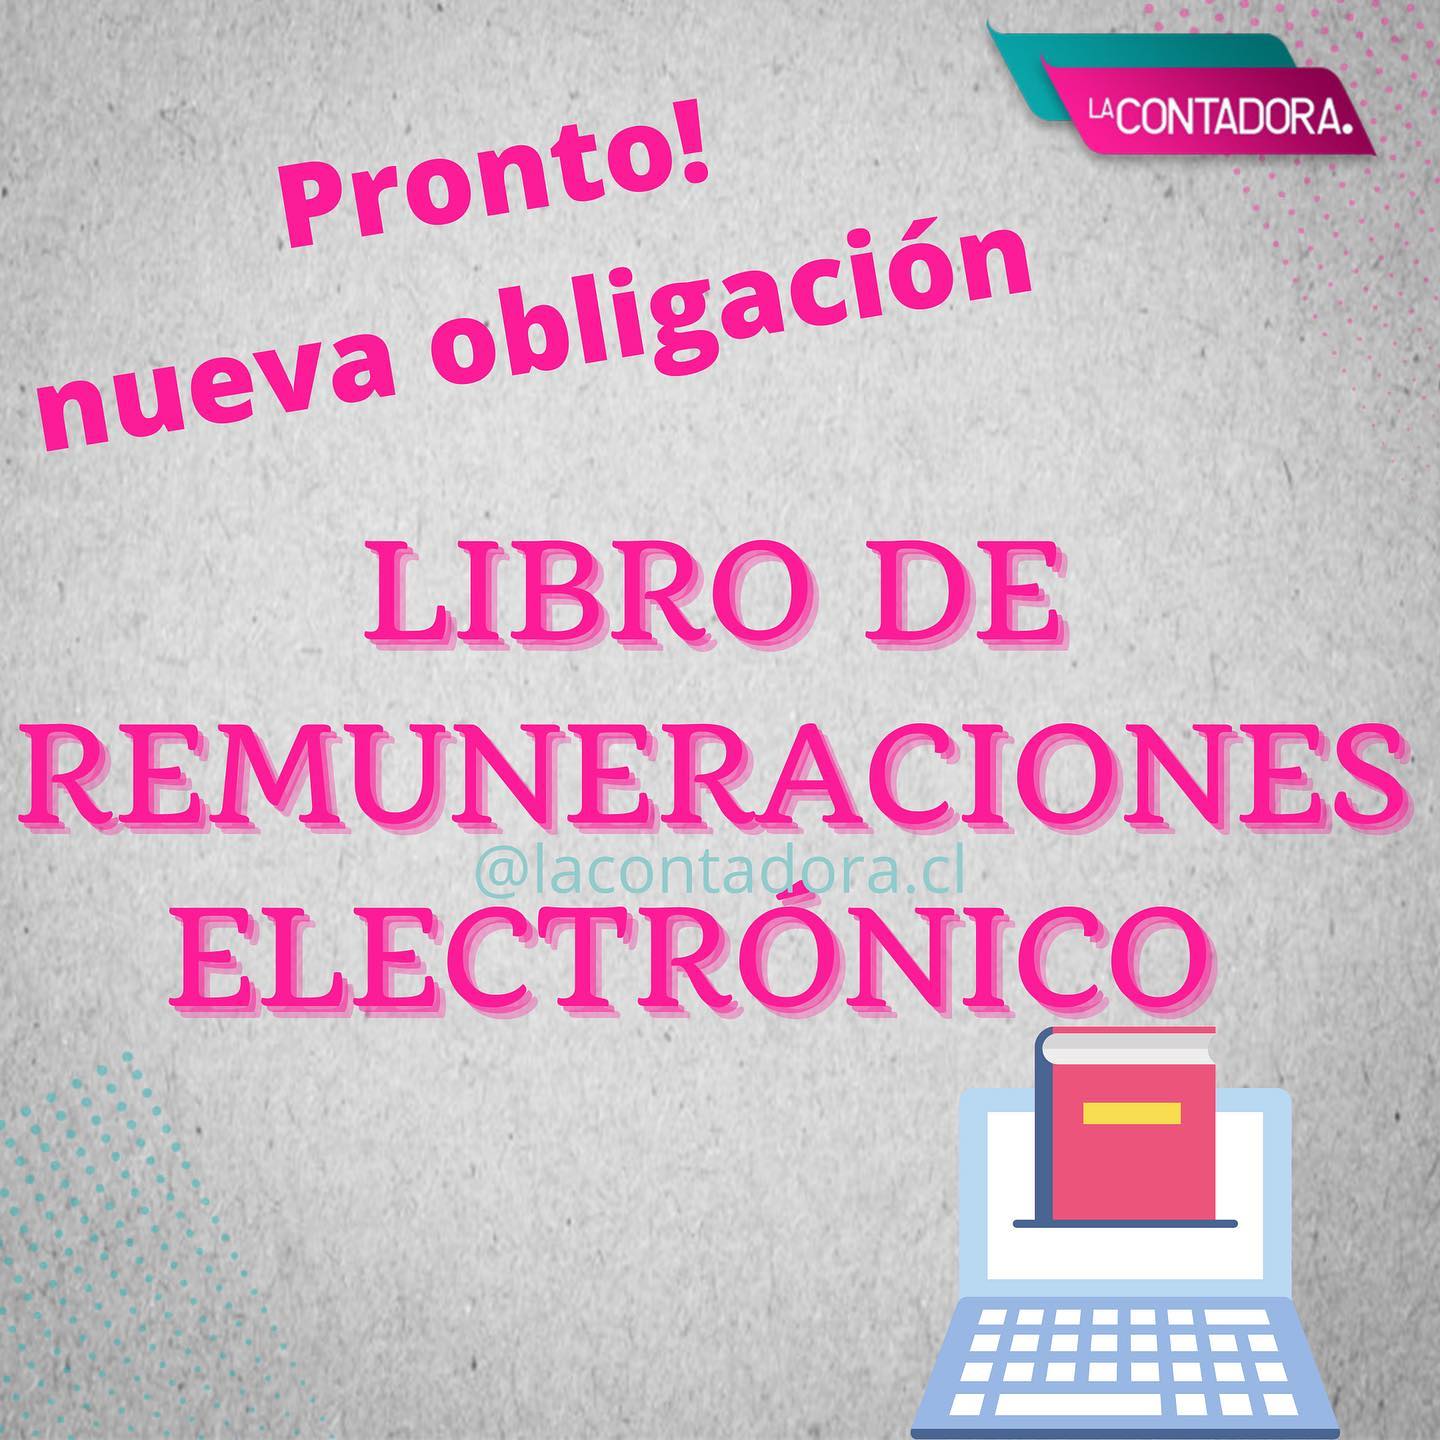 Obligatoriedad de Libros Electrónicos de Remuneraciones.